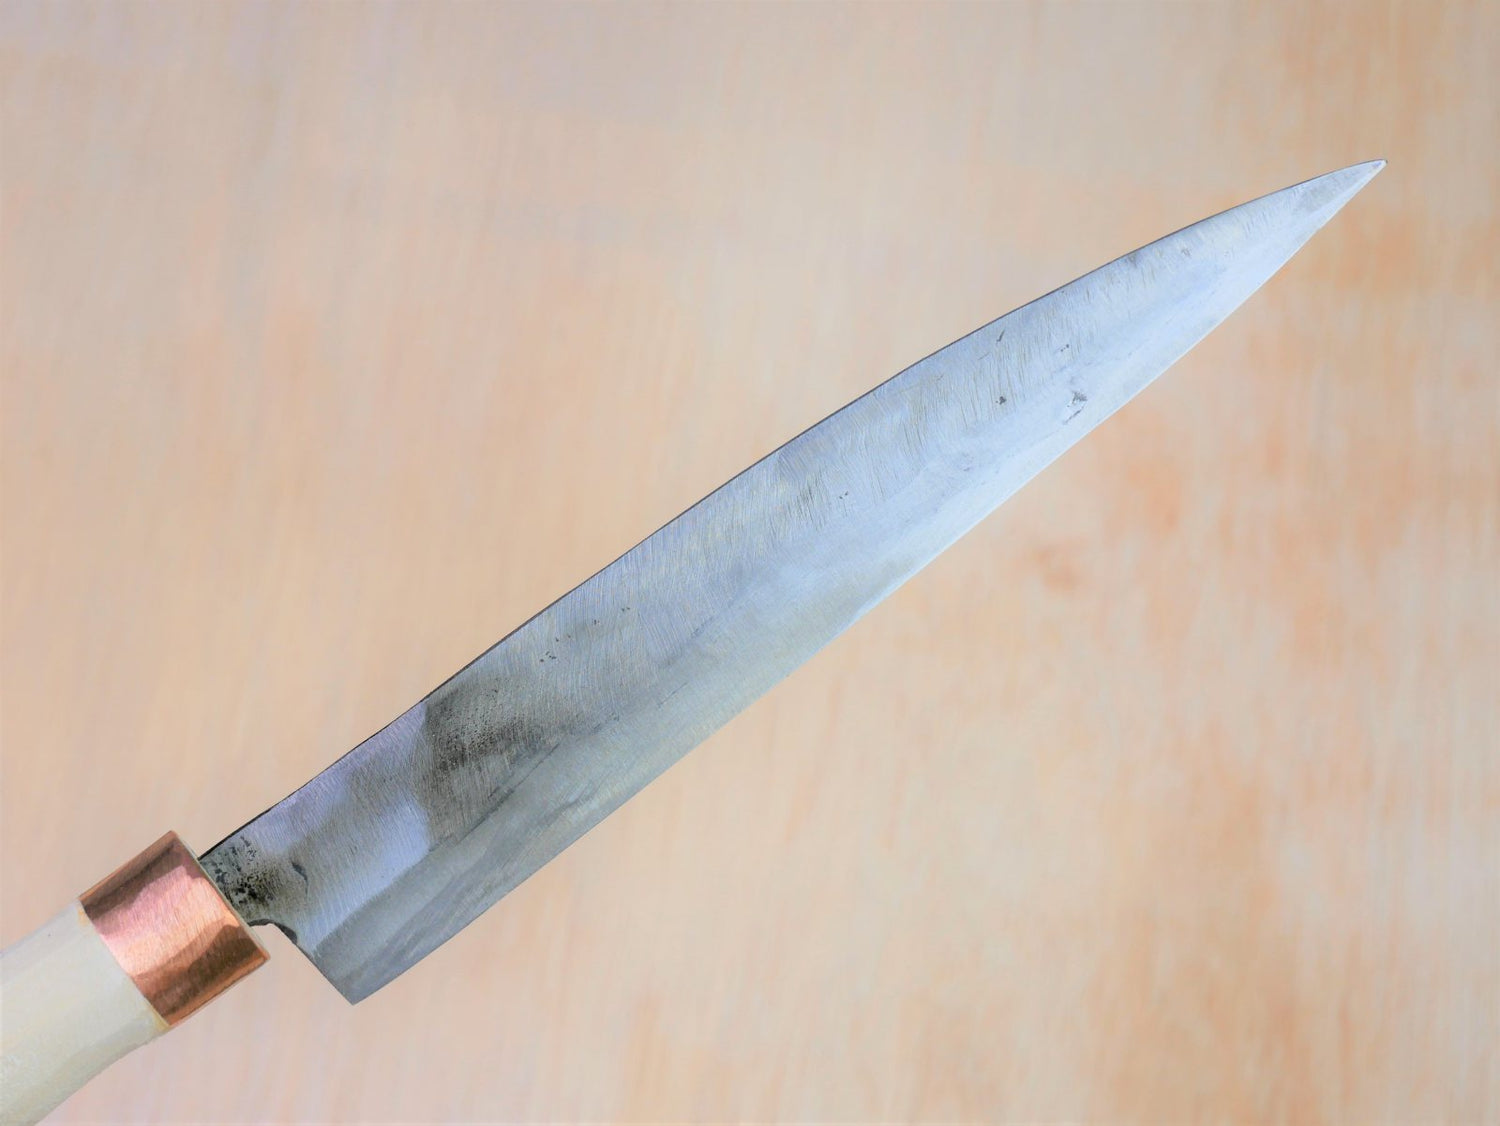 Blade of 180mm Shirogami No.3 Yanagiba made by Tsutomu Takahashi